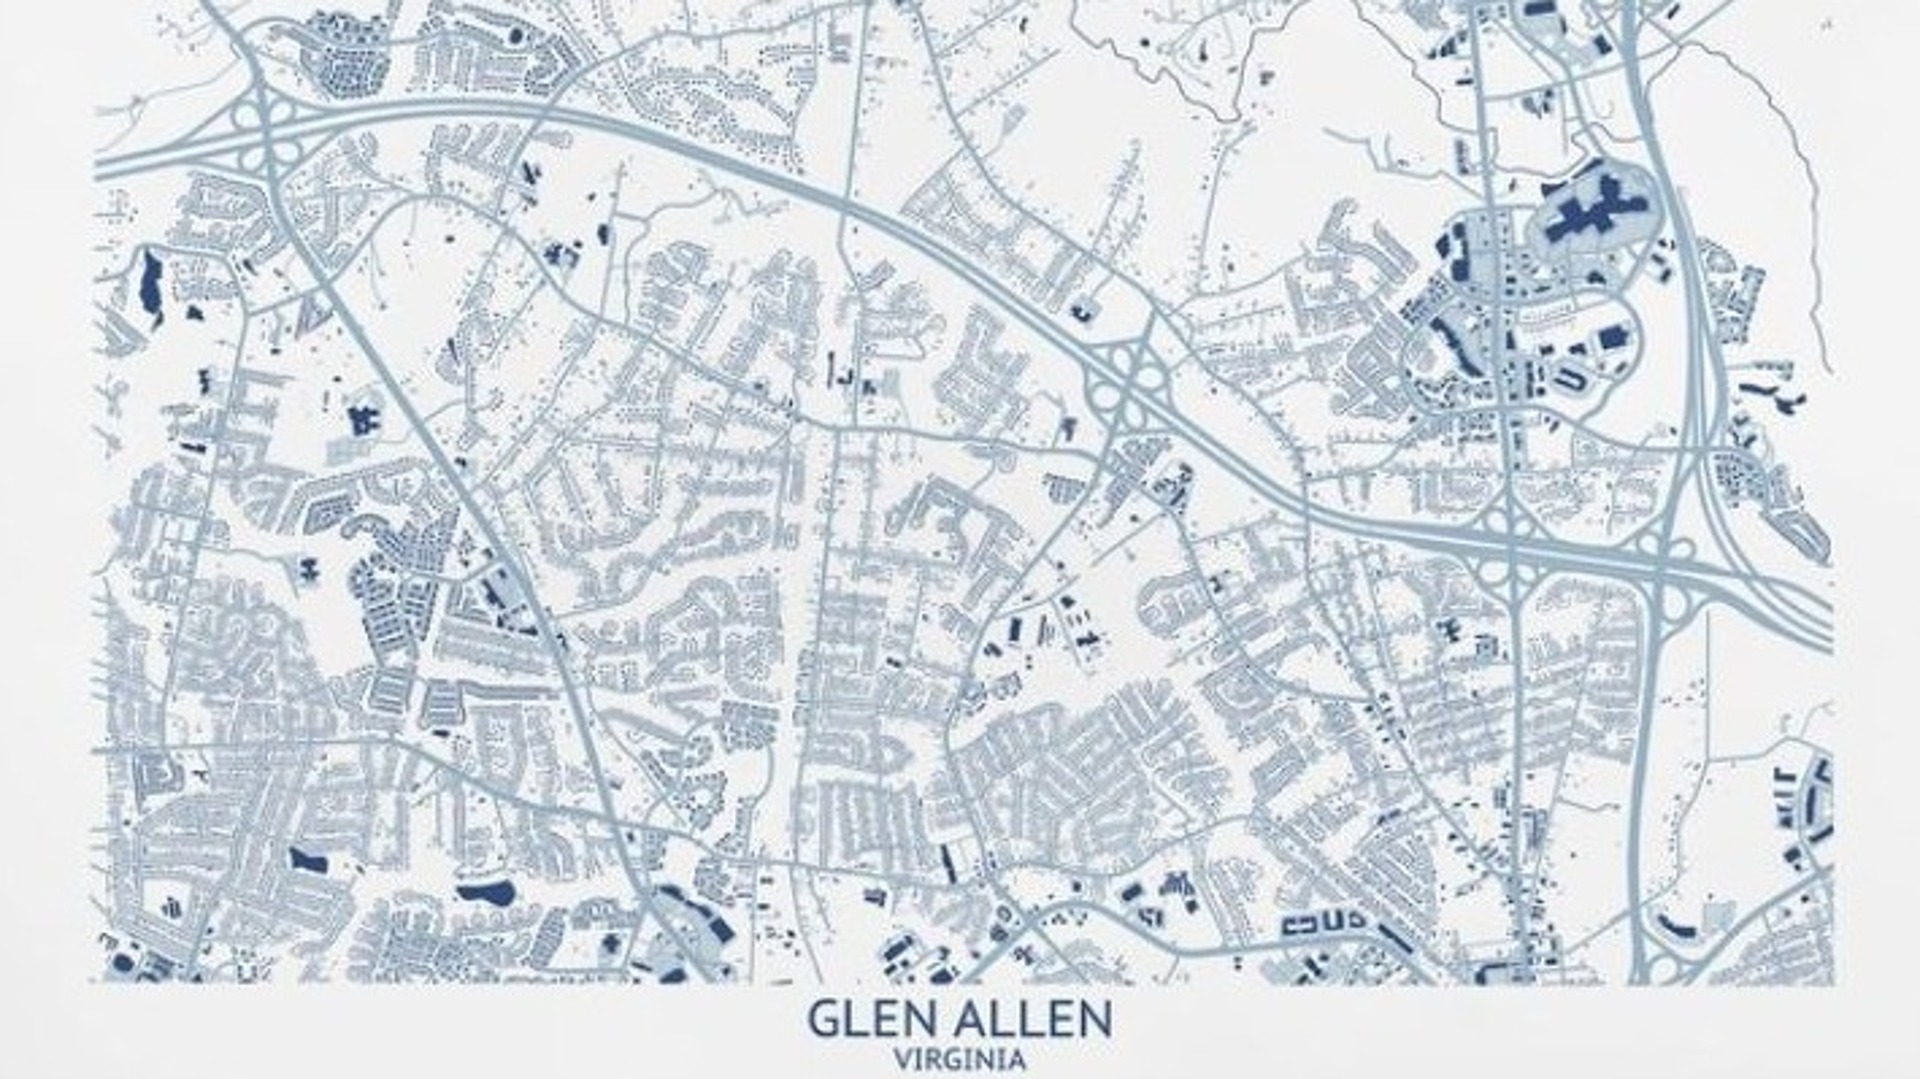 Glen Allen